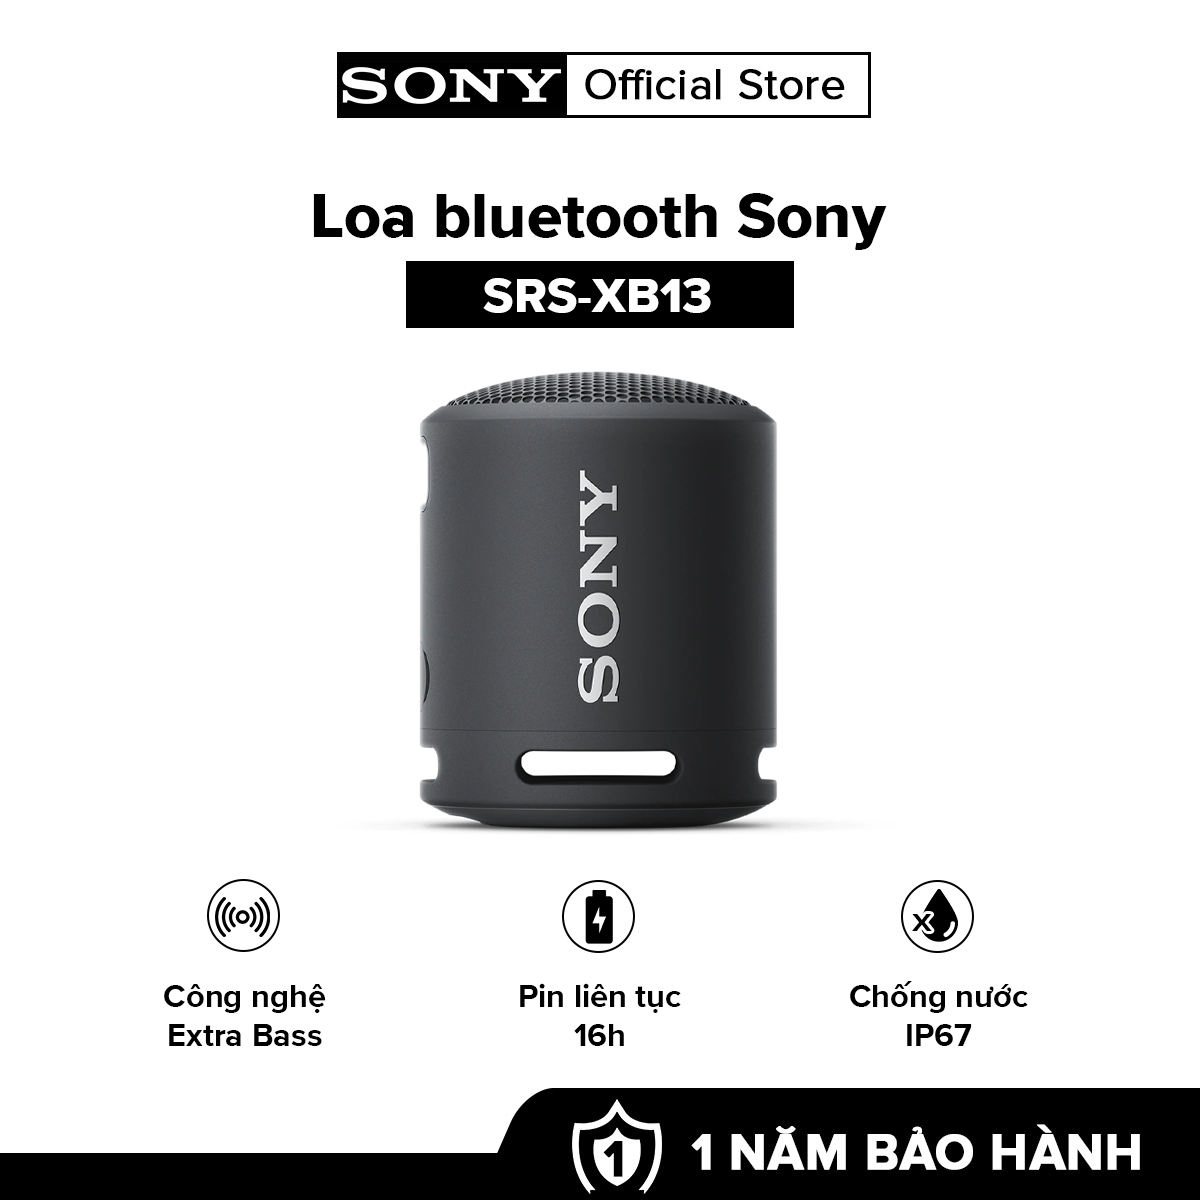 Loa Bluetooth Sony SRS-XB13 – Hàng chính hãng